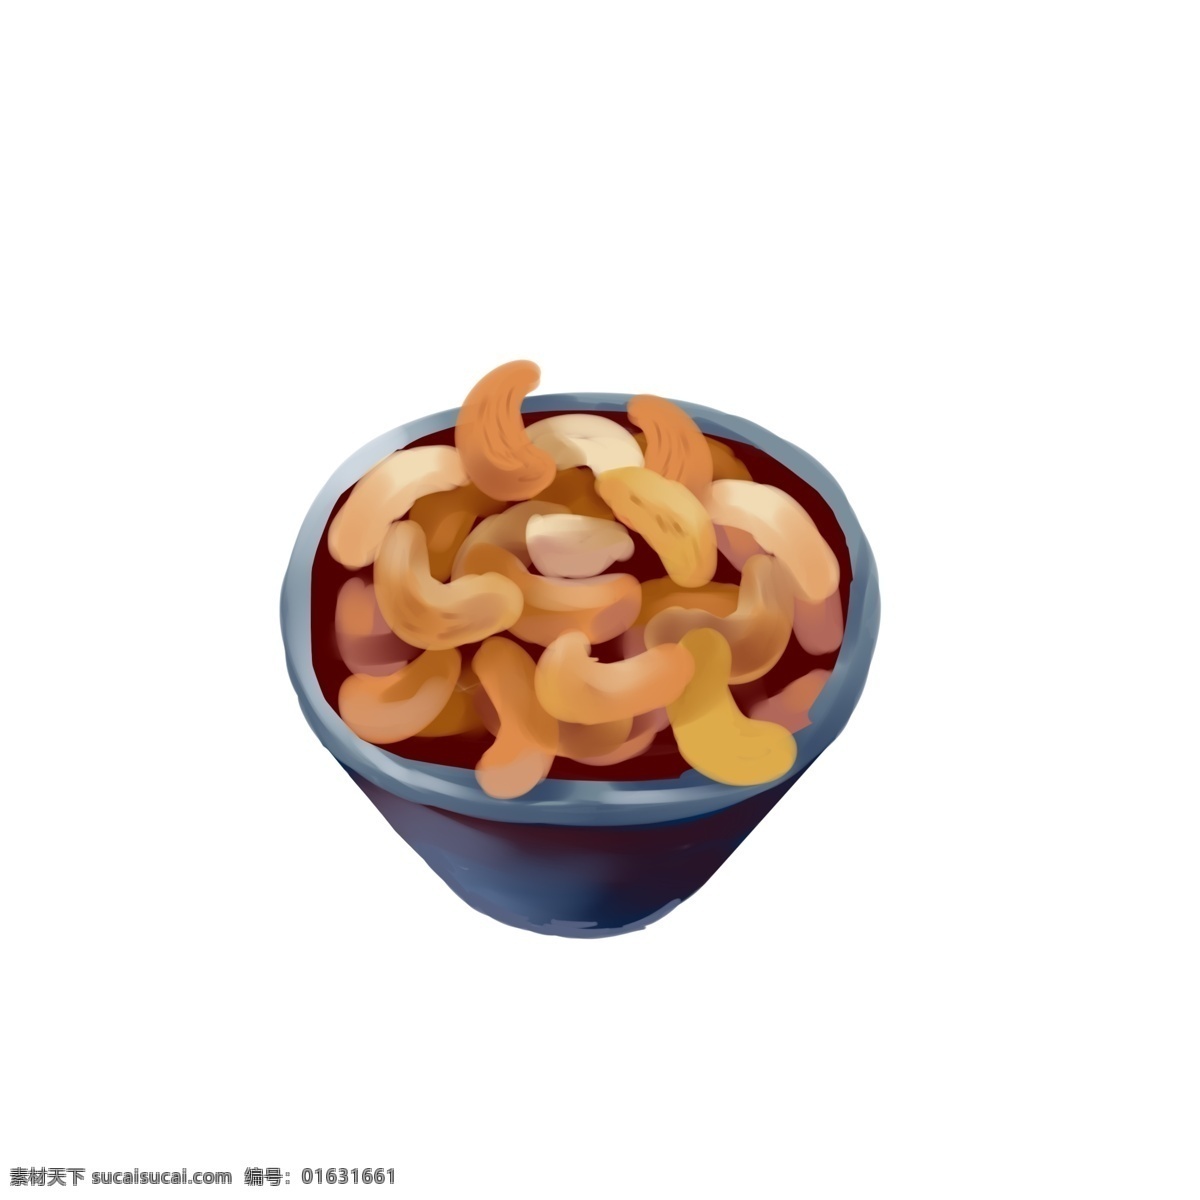 桶装 美味 坚果 插画 美味的坚果 坚果插画 食物插画 卡通插画 美食插画 零食插画 好吃的坚果